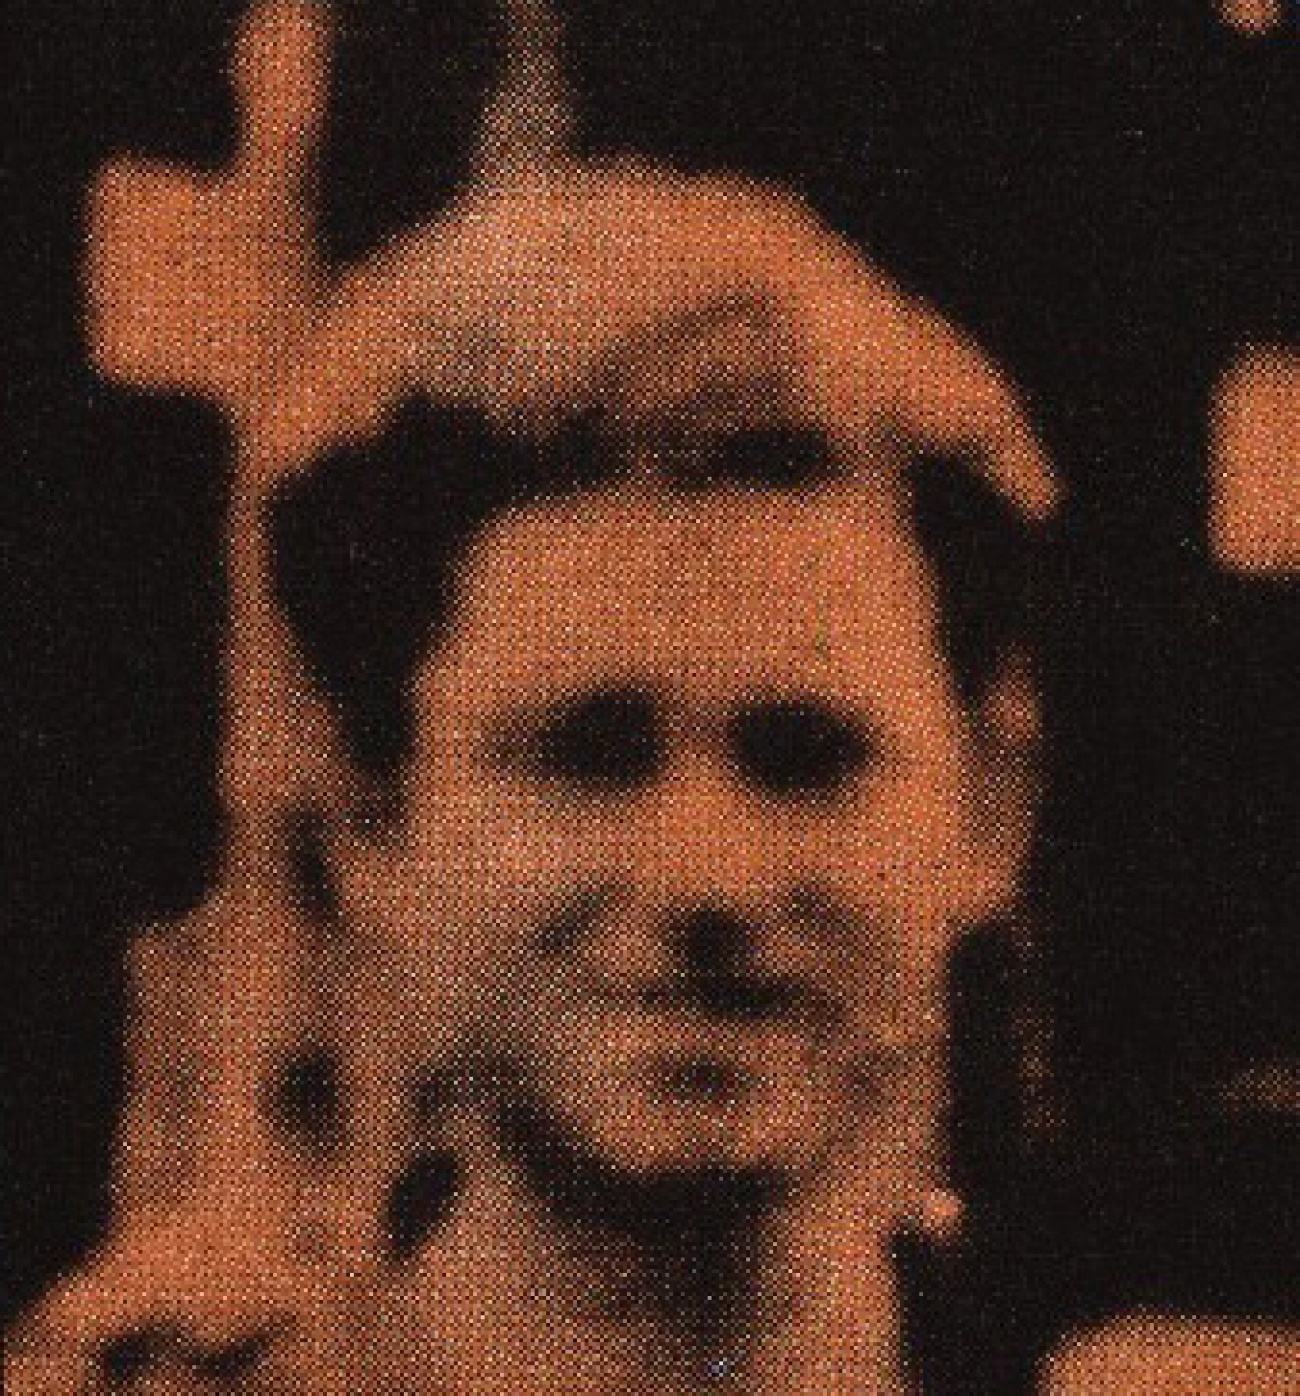 Jaime Serra, operário do Arsenal do Alfeite, pouco antes de passar à clandestinidade (1947)